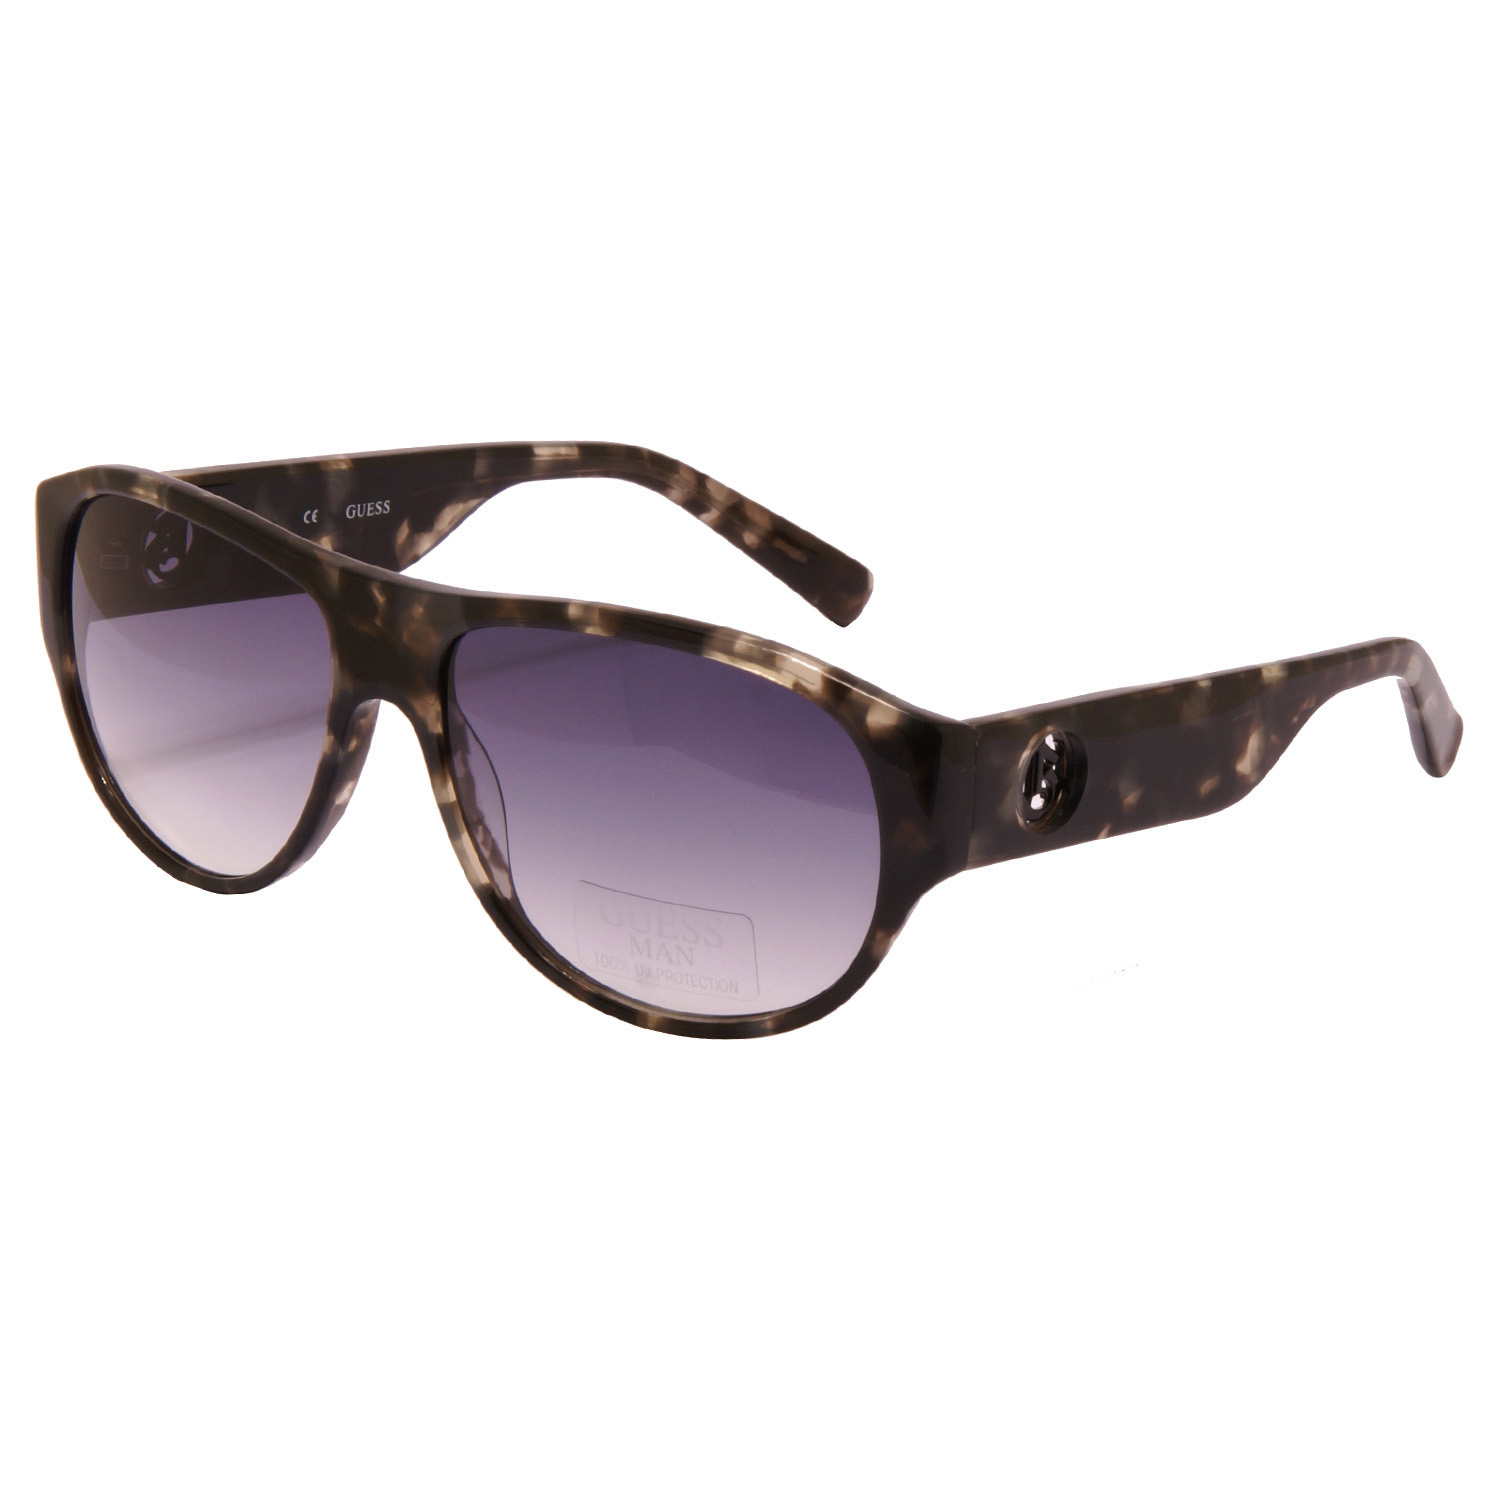 Guess - Grey Tortoiseshell Classic Sunglasses - YaYa21